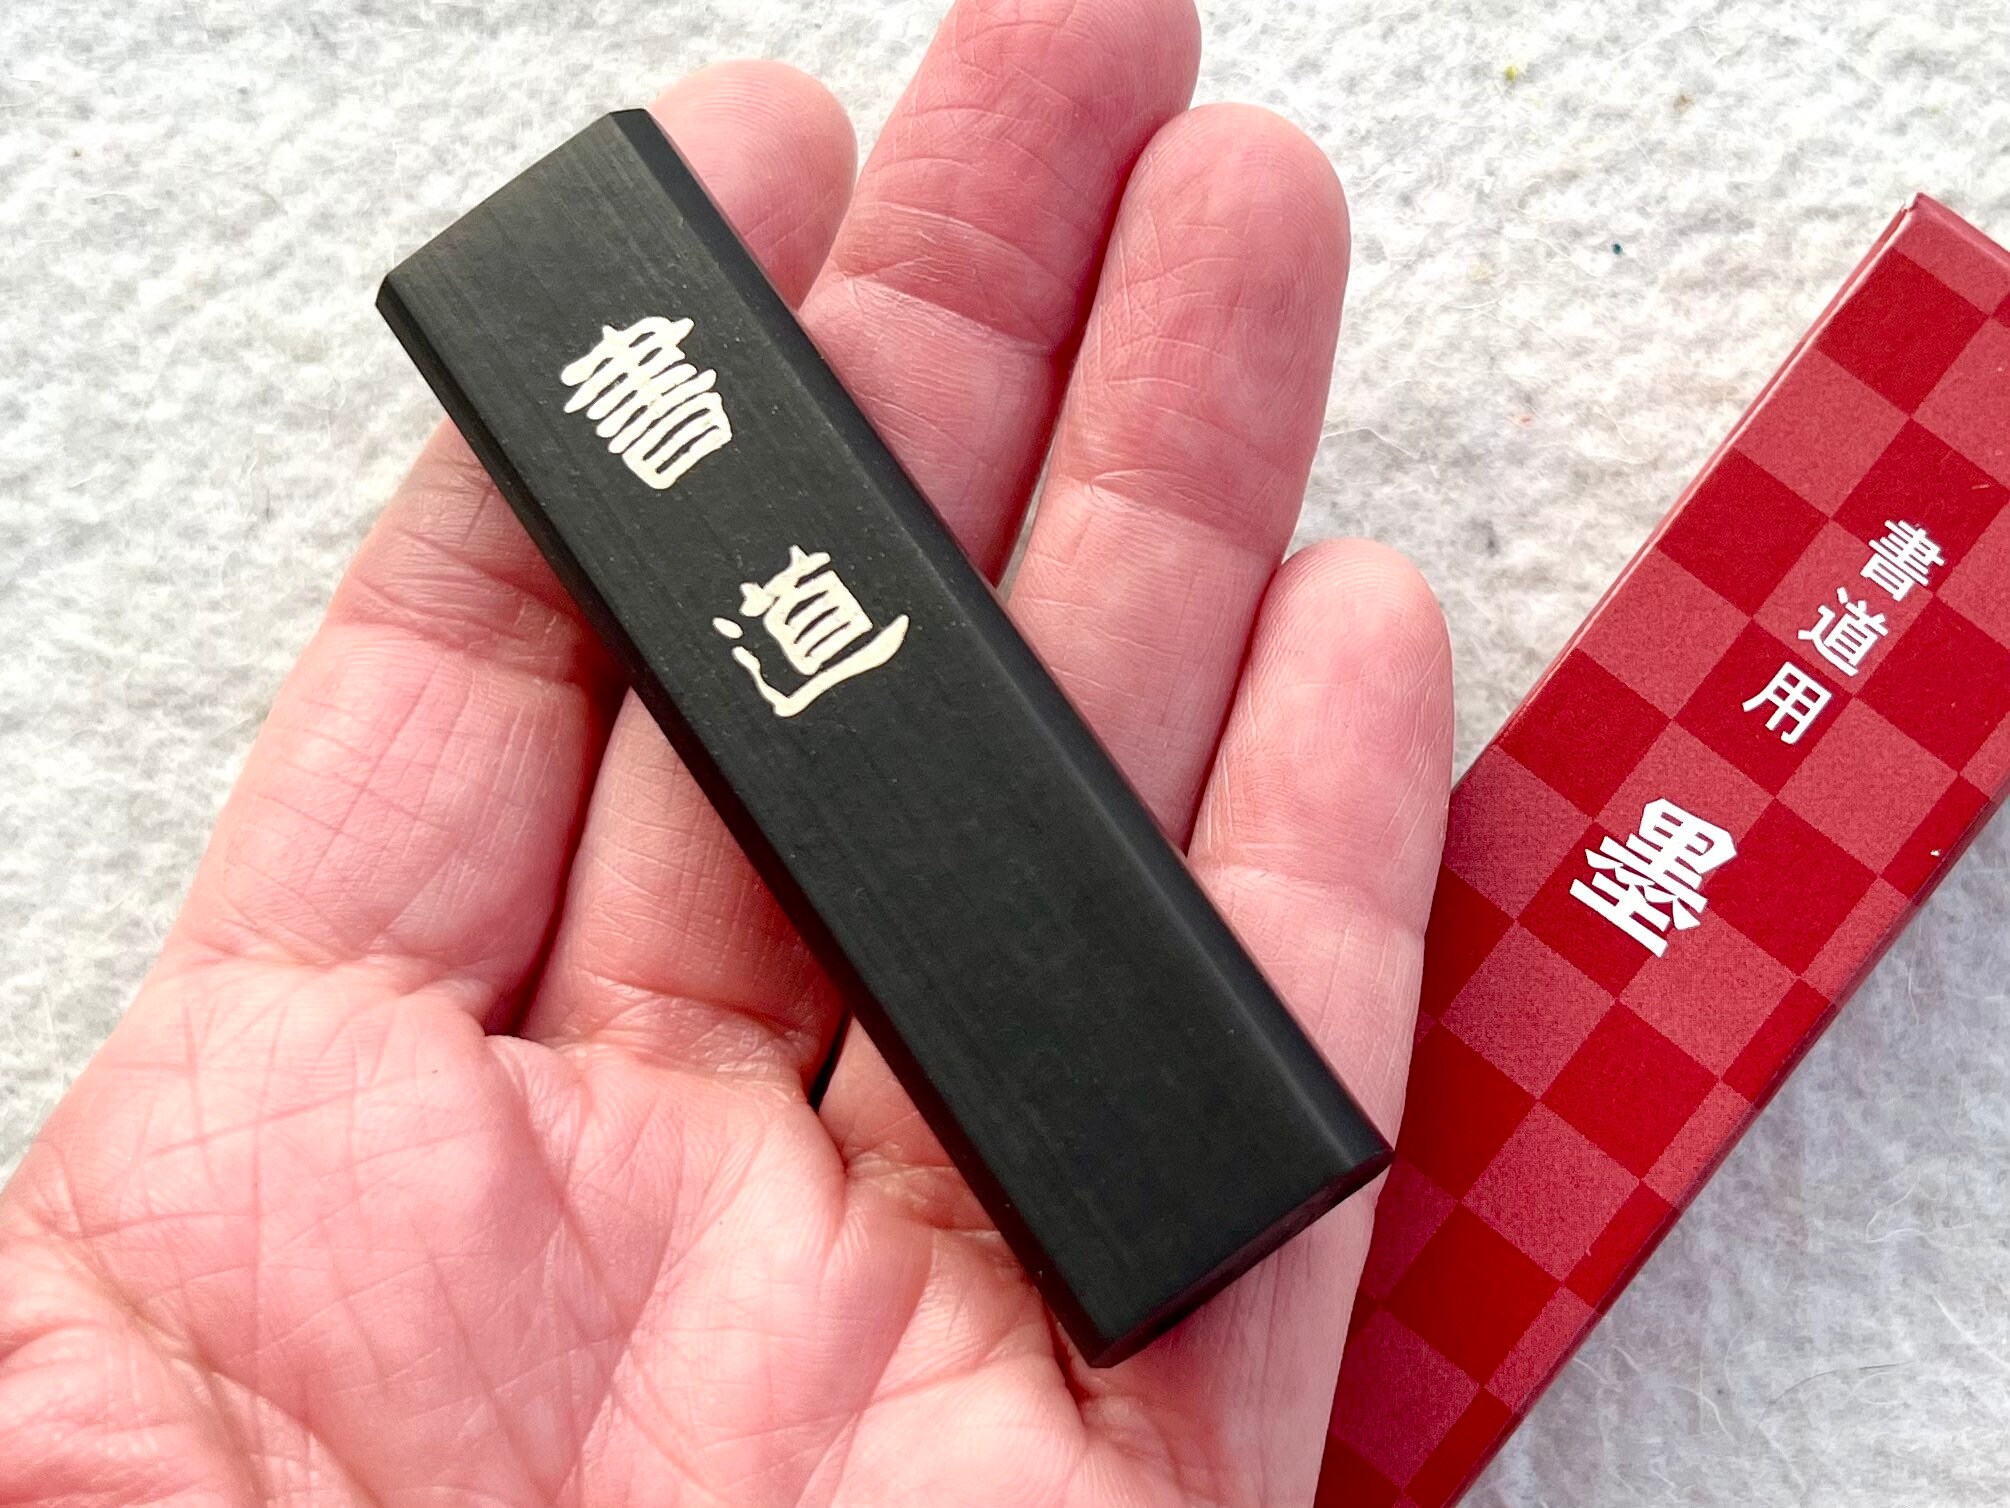 Japanese solid ink stick Yonmarru jirushi